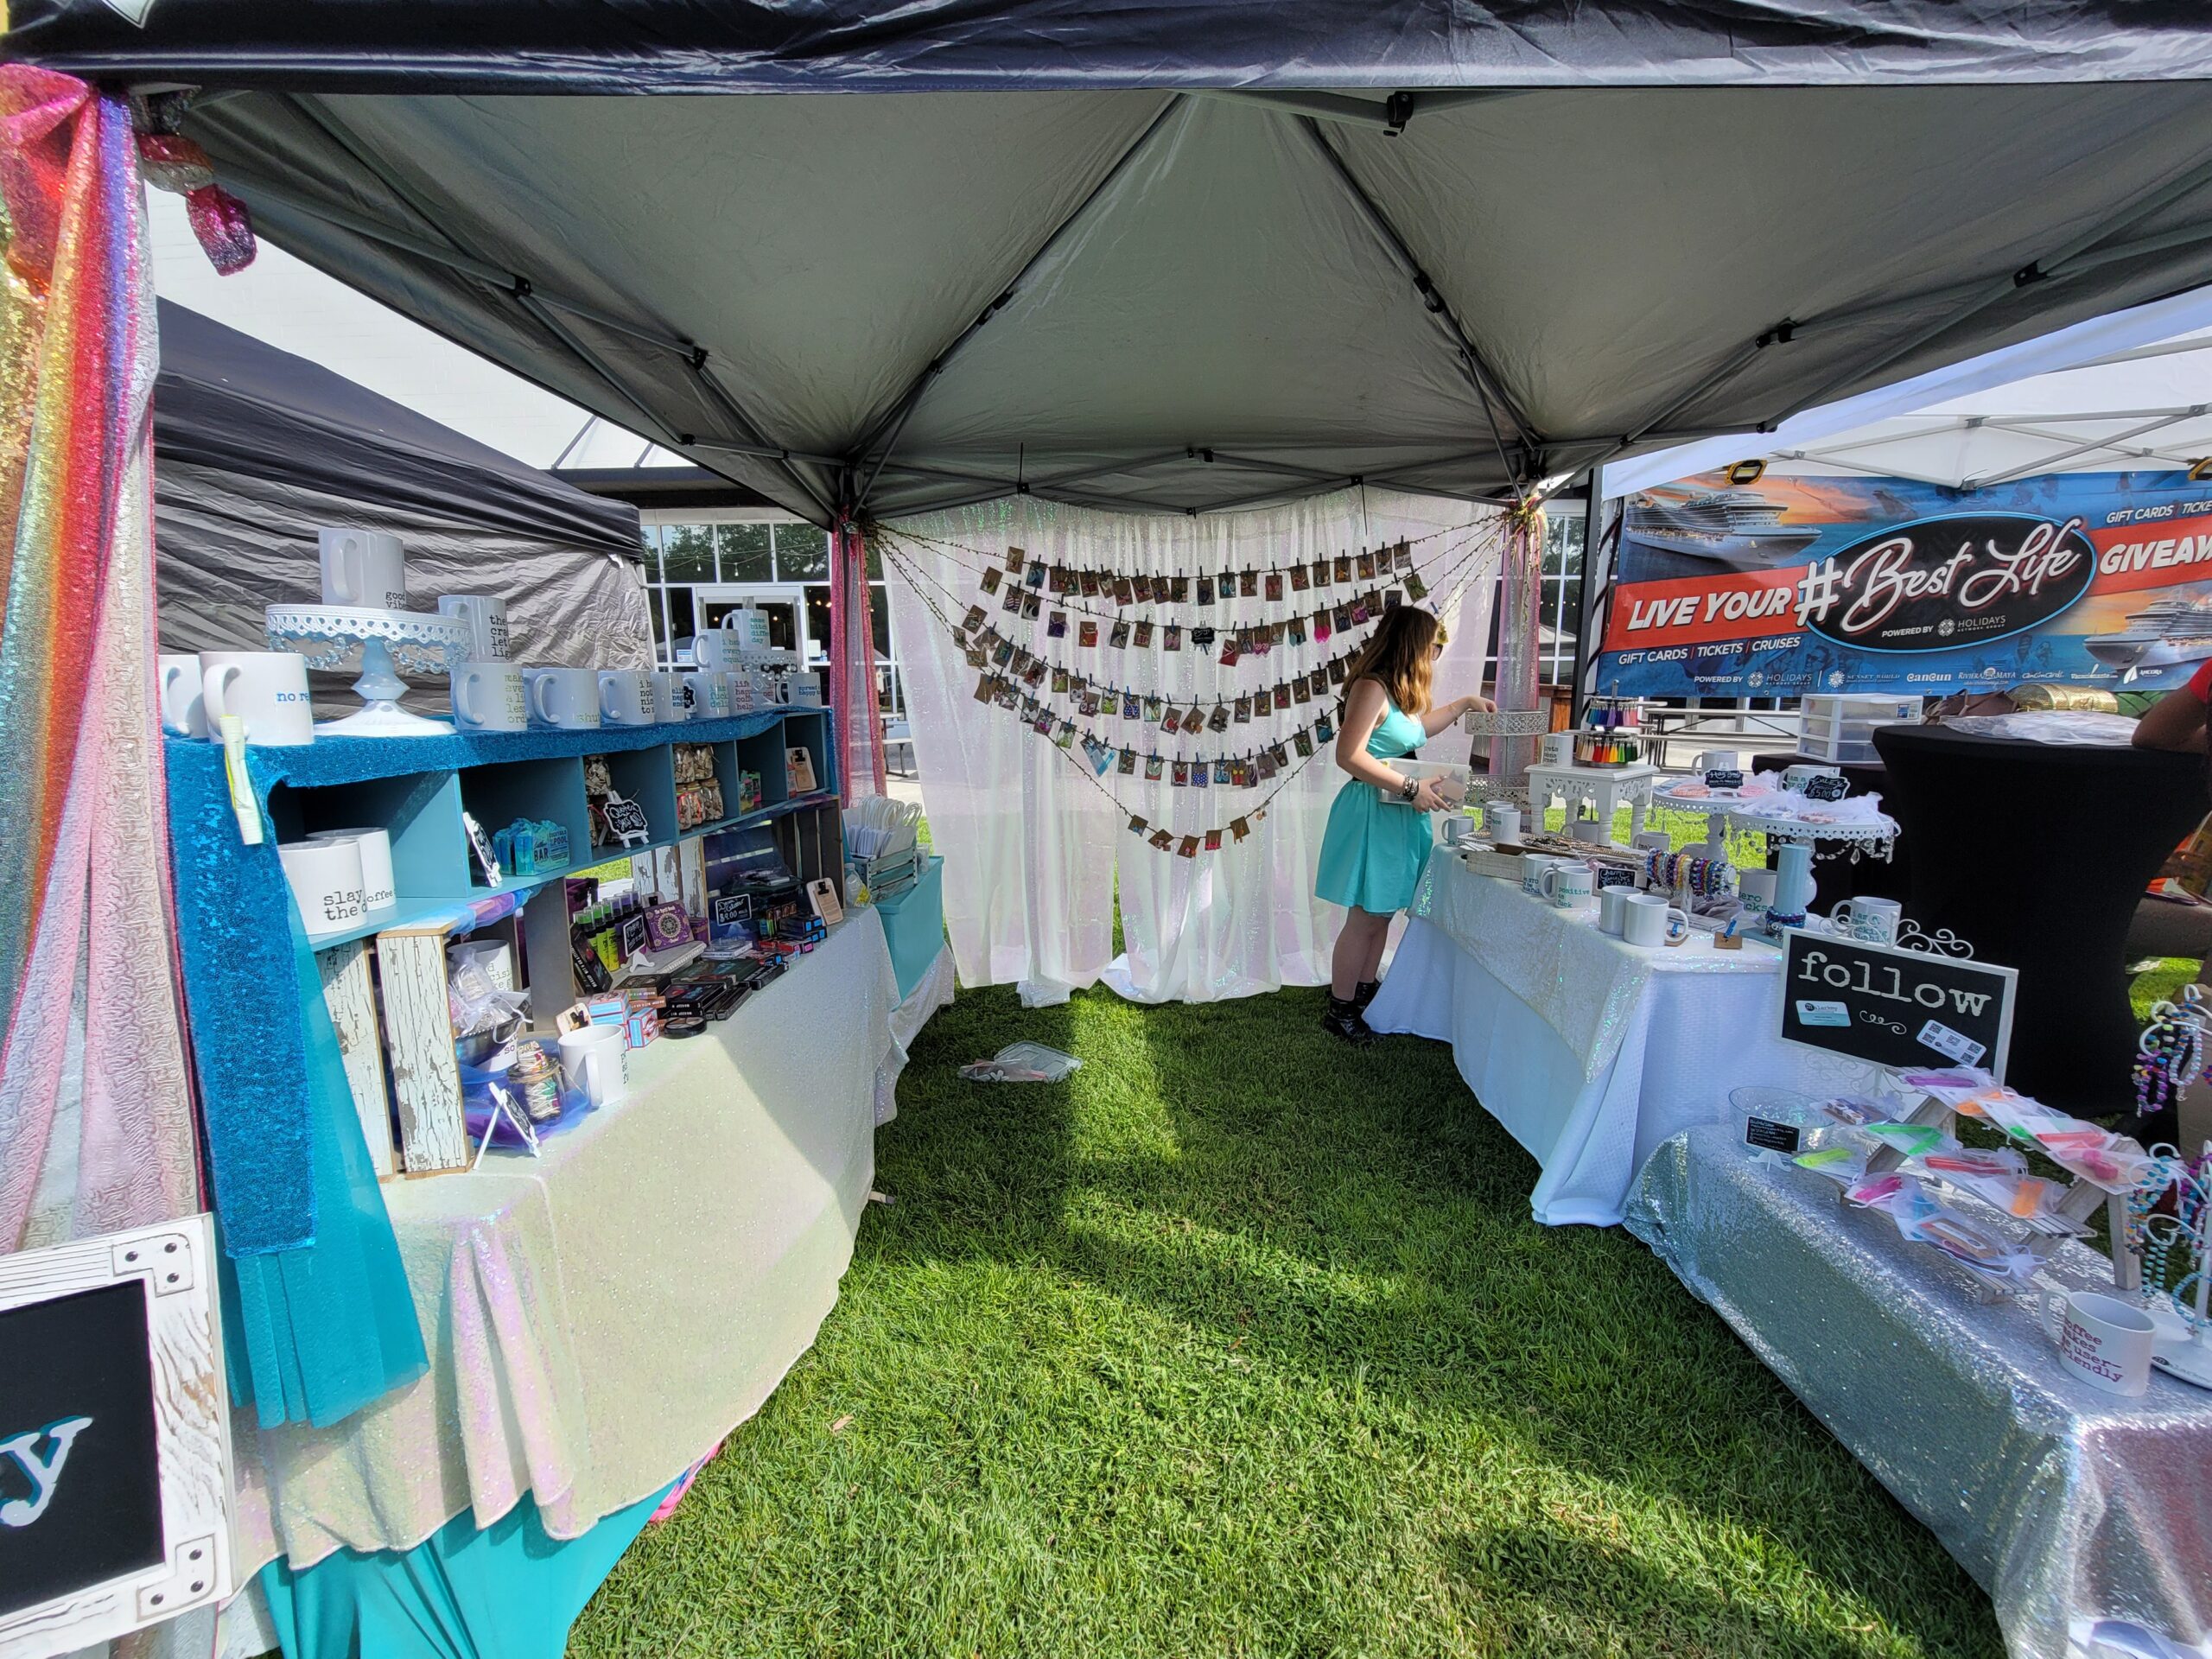 malarkey's first vendor fair exposed